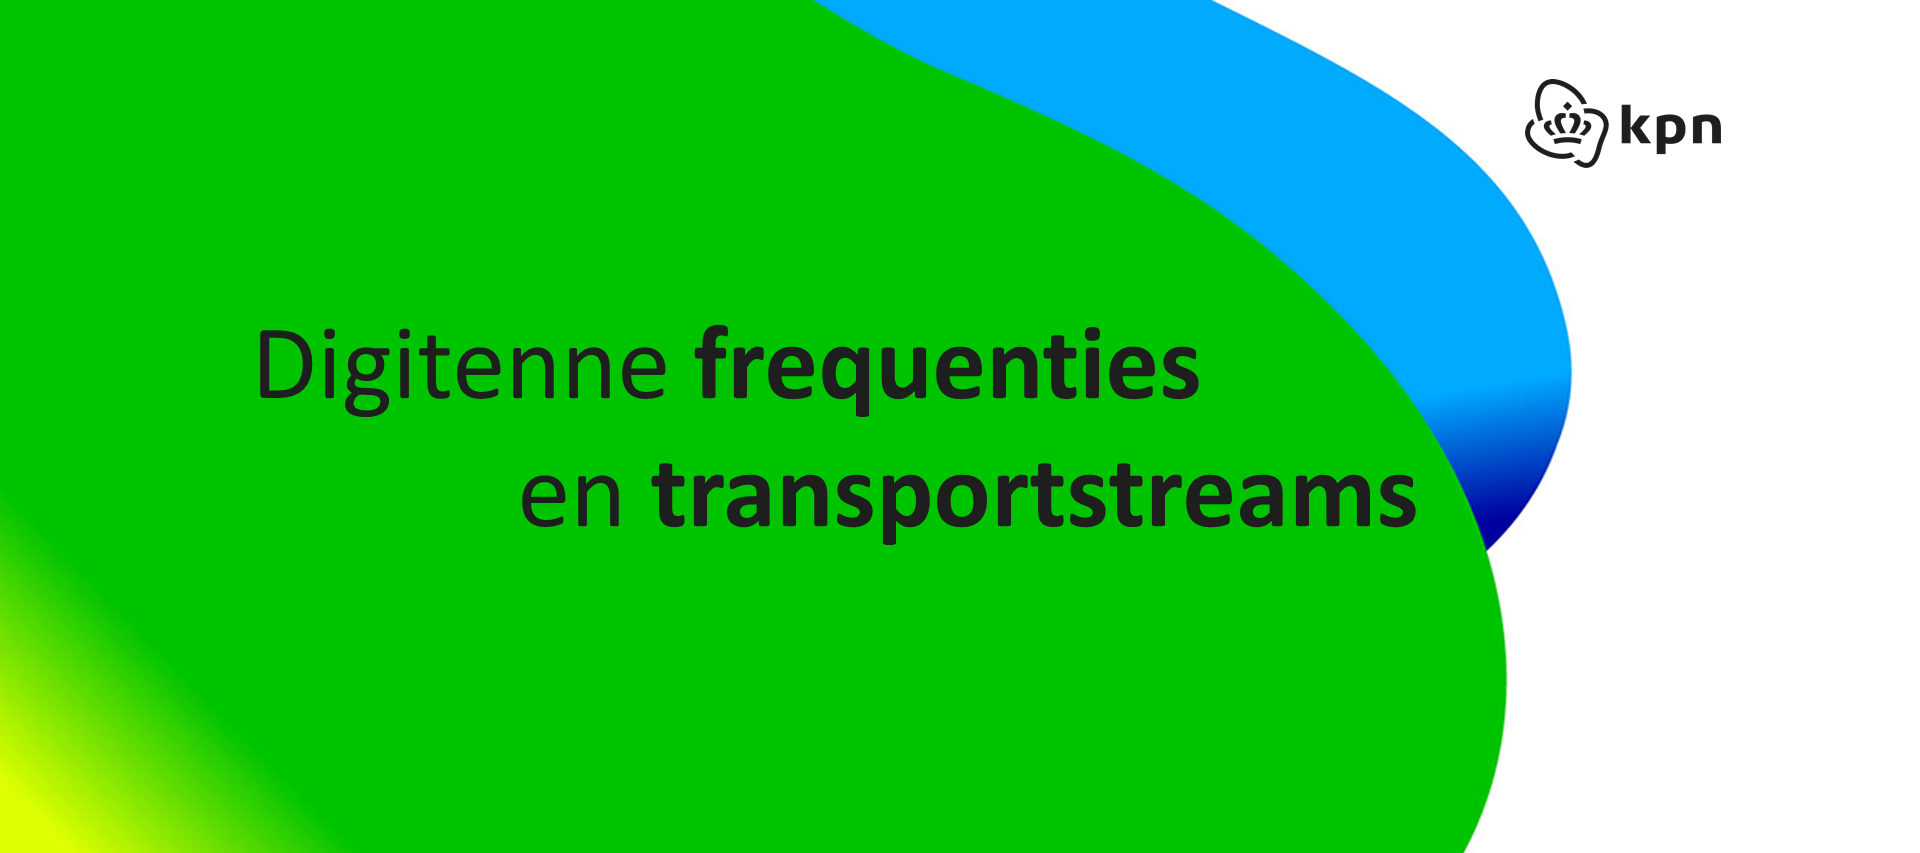 Digitenne frequenties, transportstreams en regionale omroepen